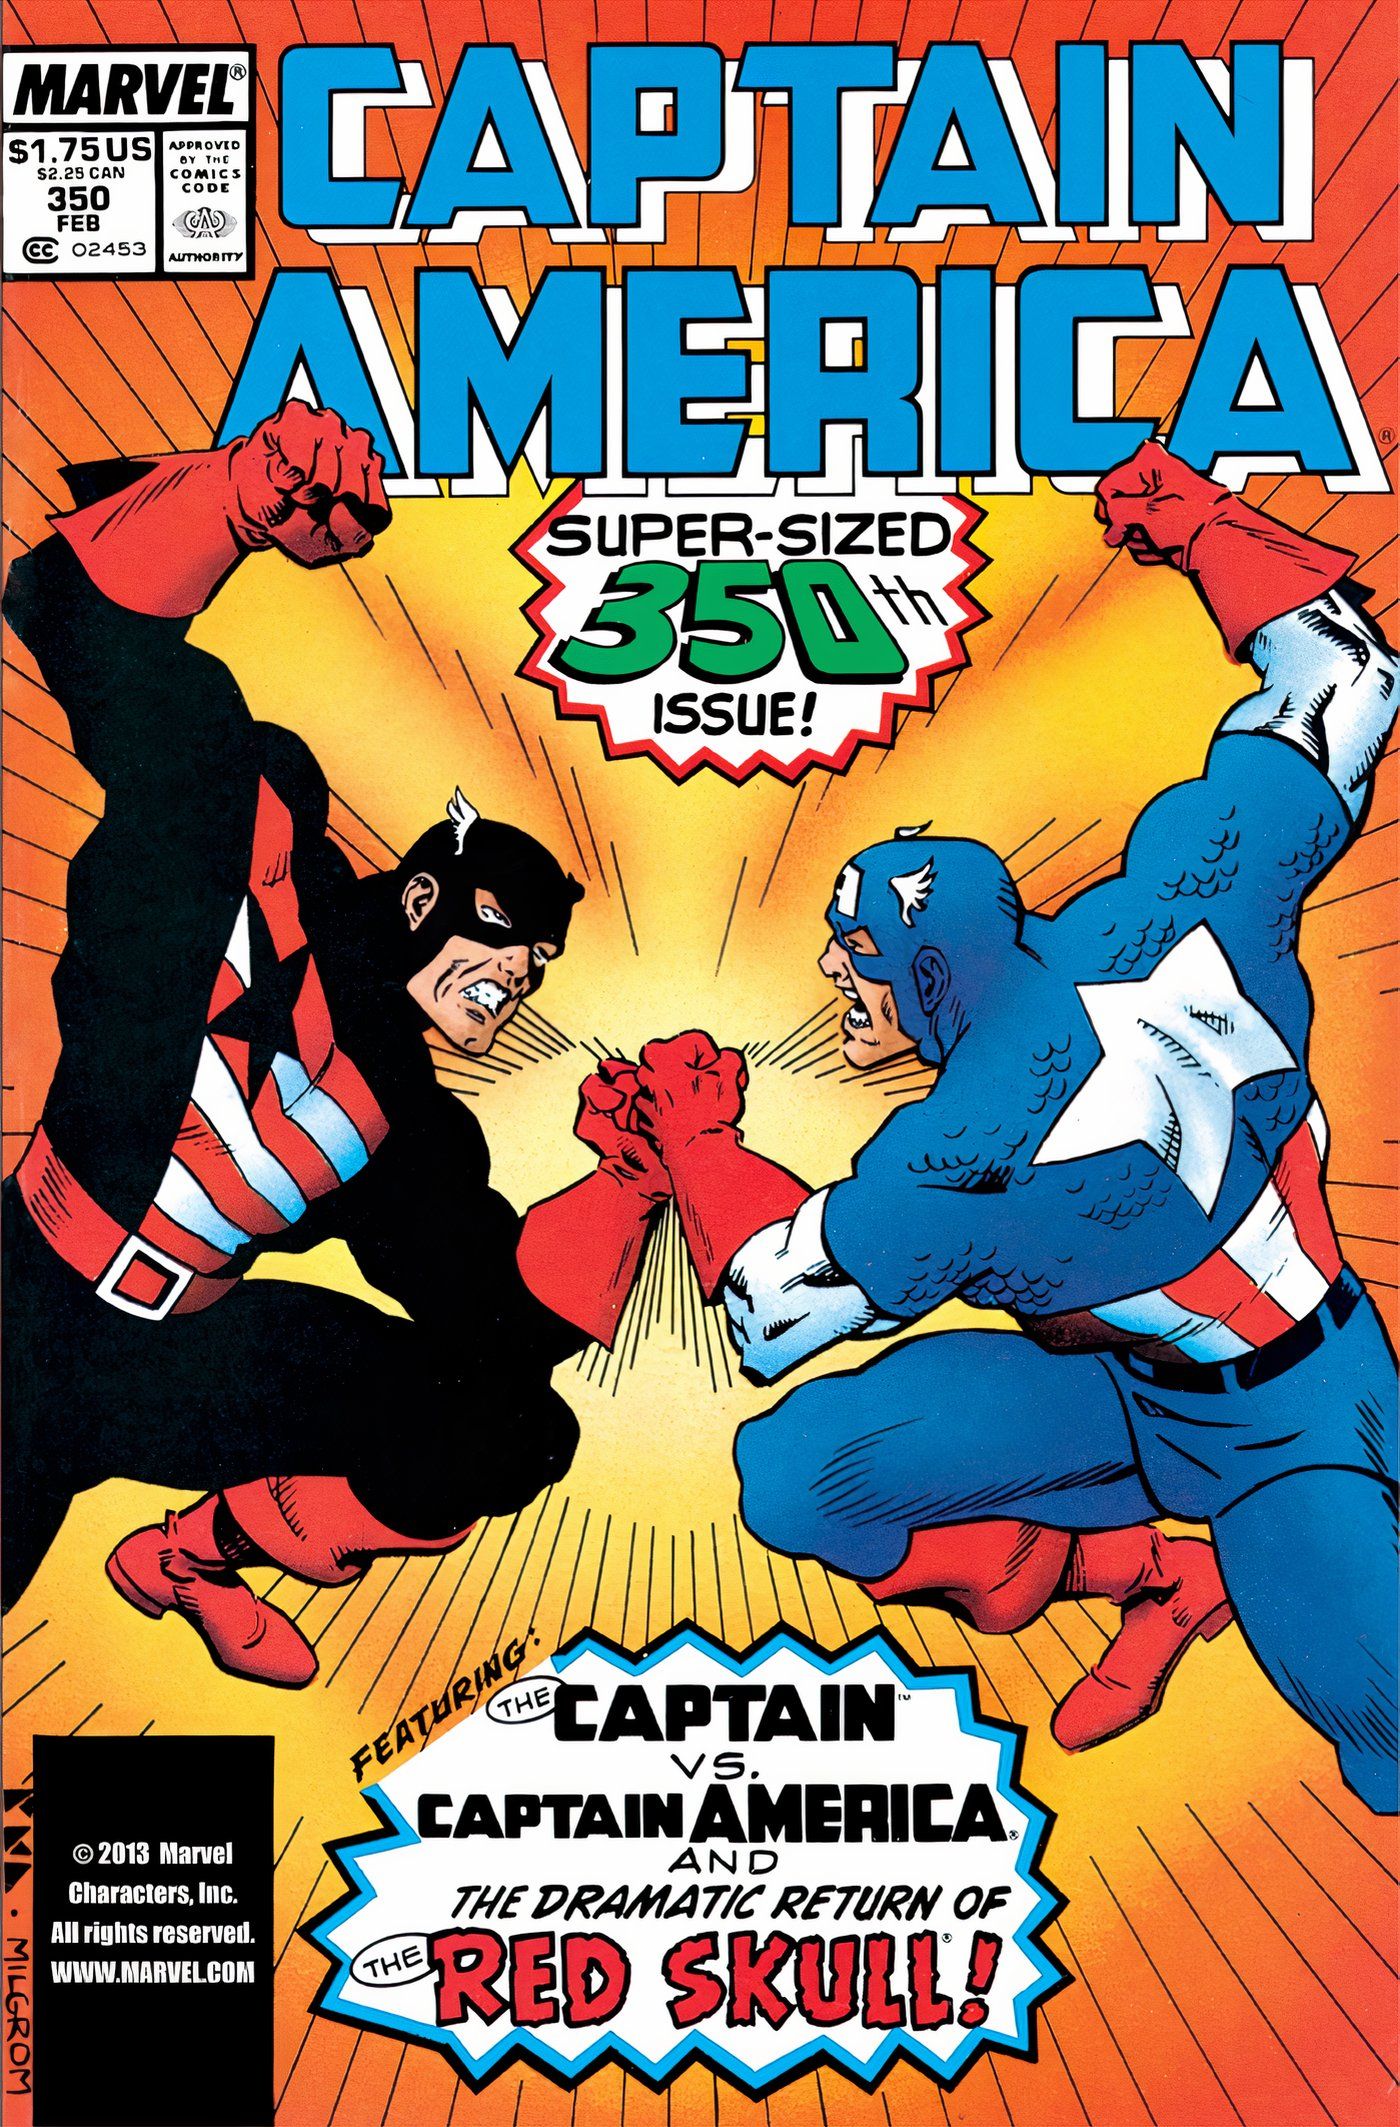 Capa do Capitão América #350